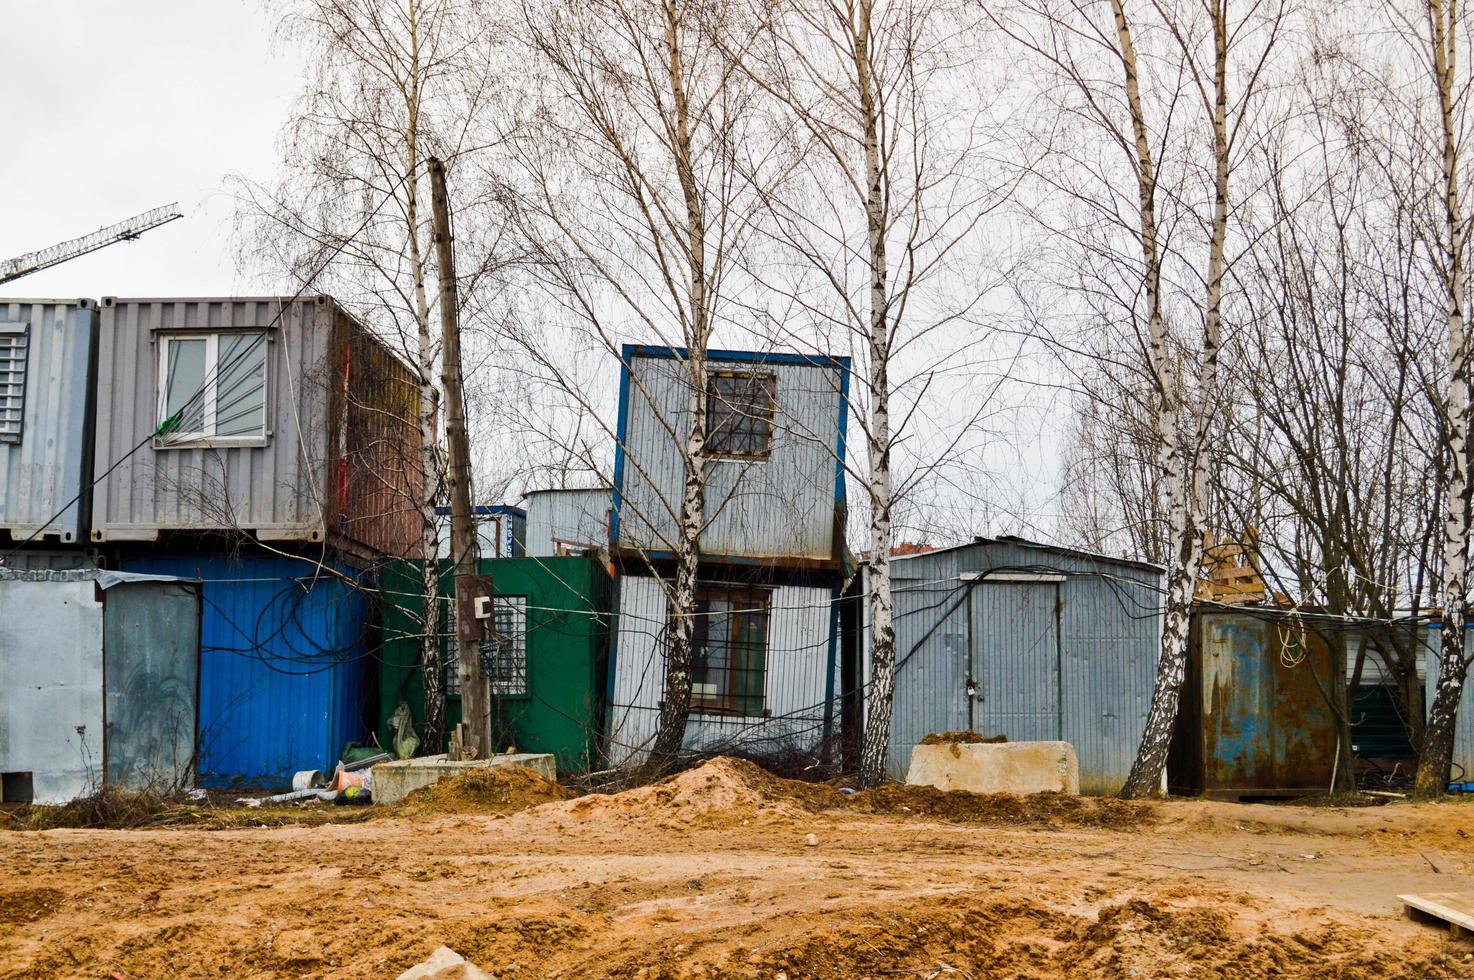 kleine temporäre Häuser von Bauarbeitern aus Containern auf einer Industriebaustelle. Blockmodulbaustadt mit Wechselhäusern für Arbeiter foto